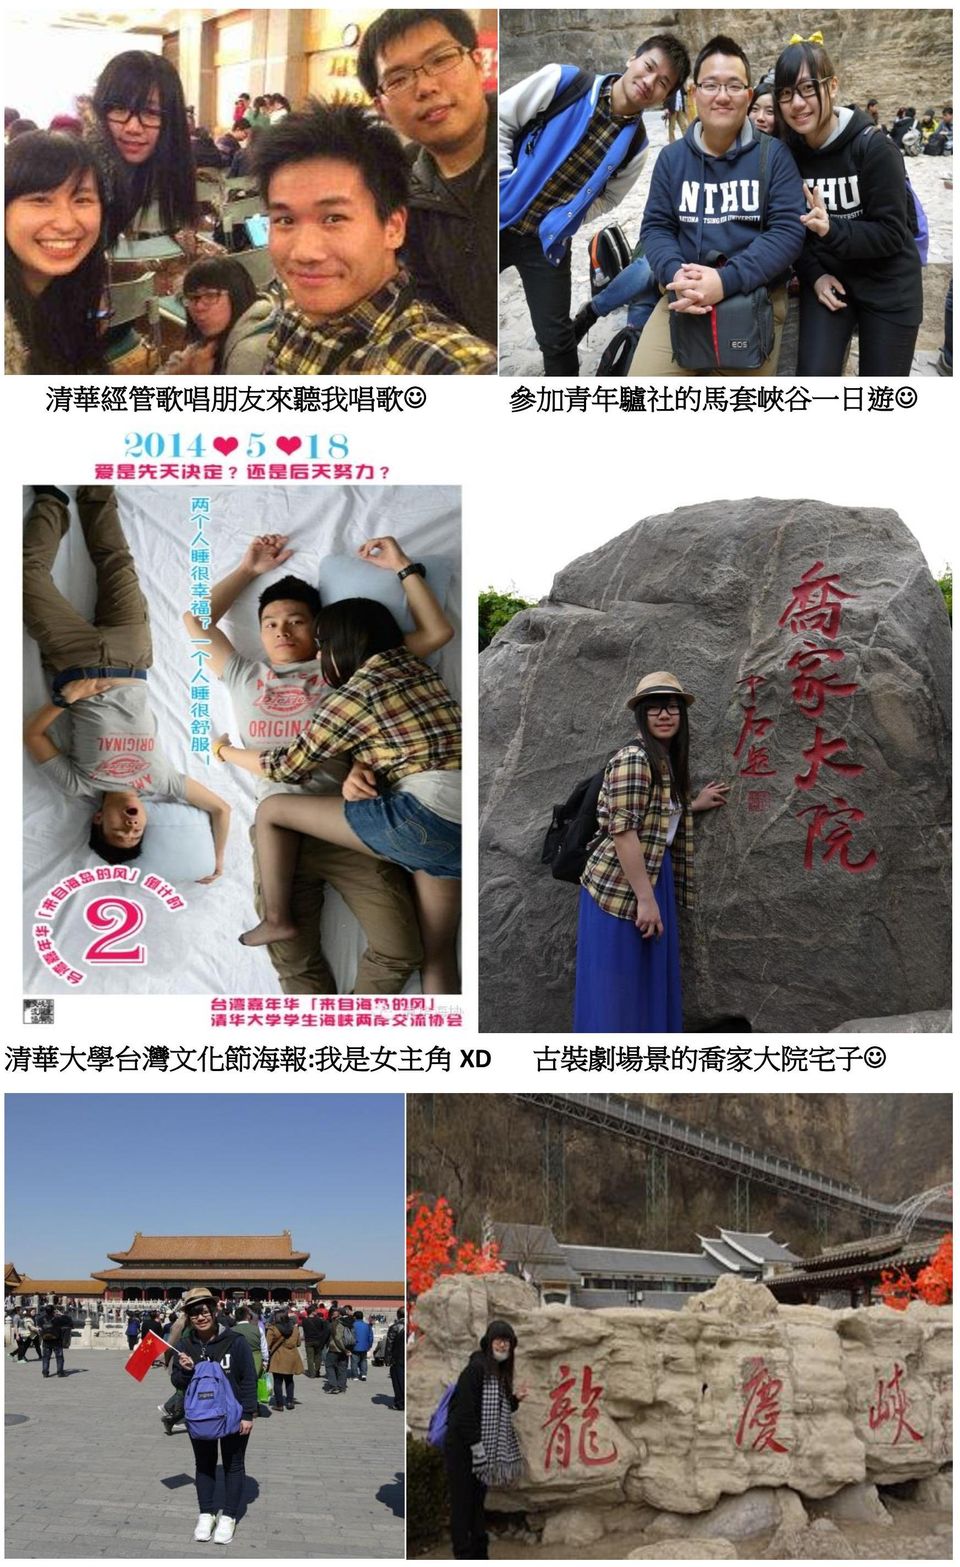 華 大 學 台 灣 文 化 節 海 報 : 我 是 女